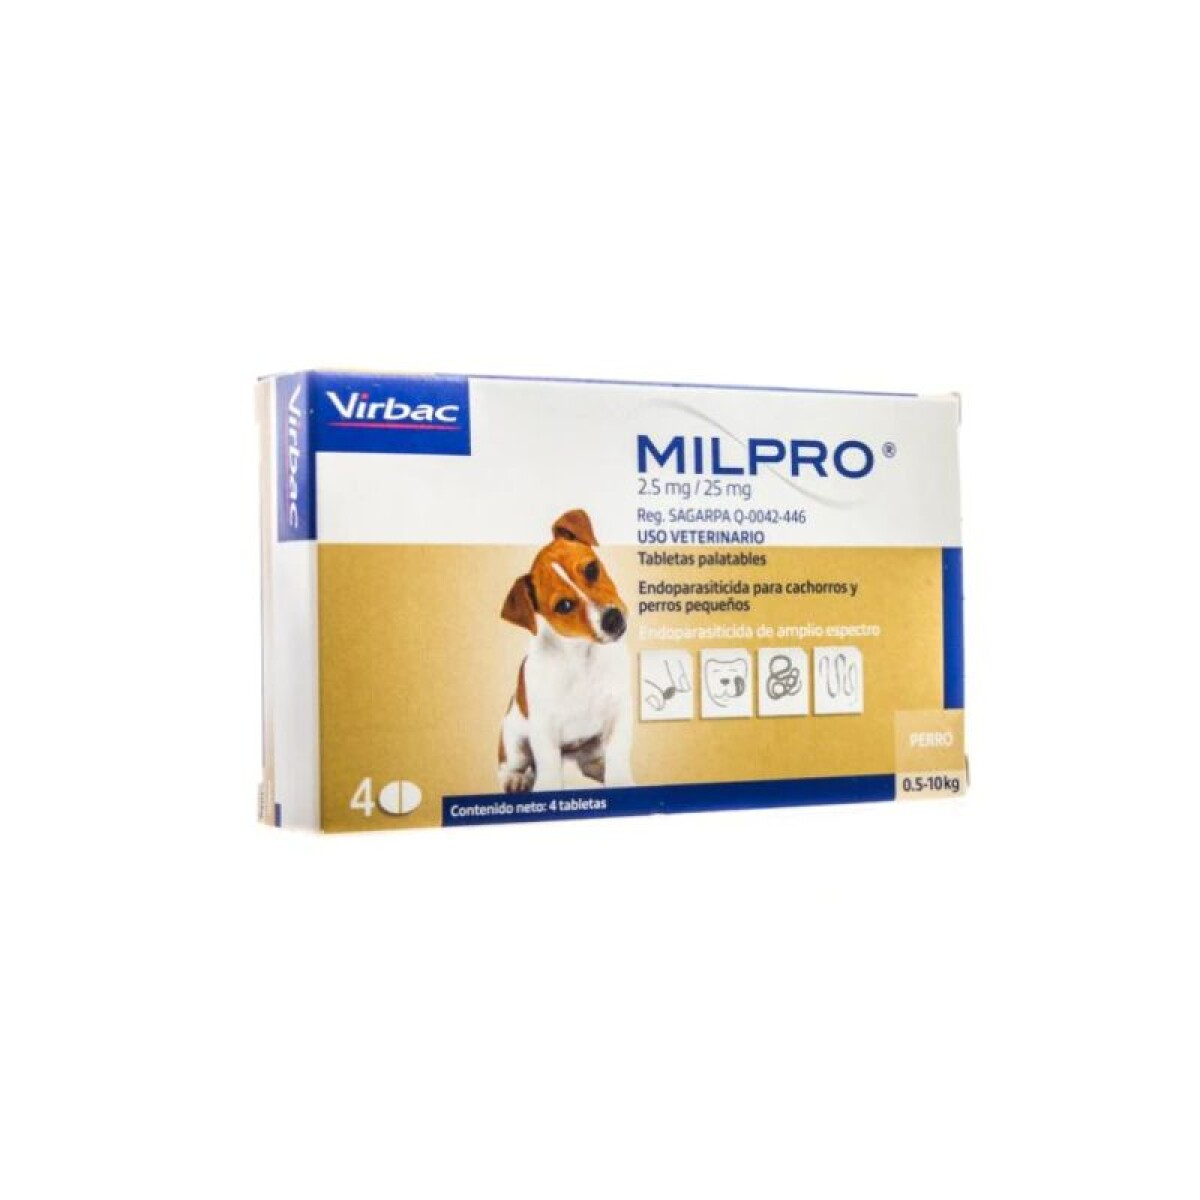 MILPRO DOG -5KG (1 COMPRIMIDO) - Milpro Dog -5kg (1 Comprimido) 